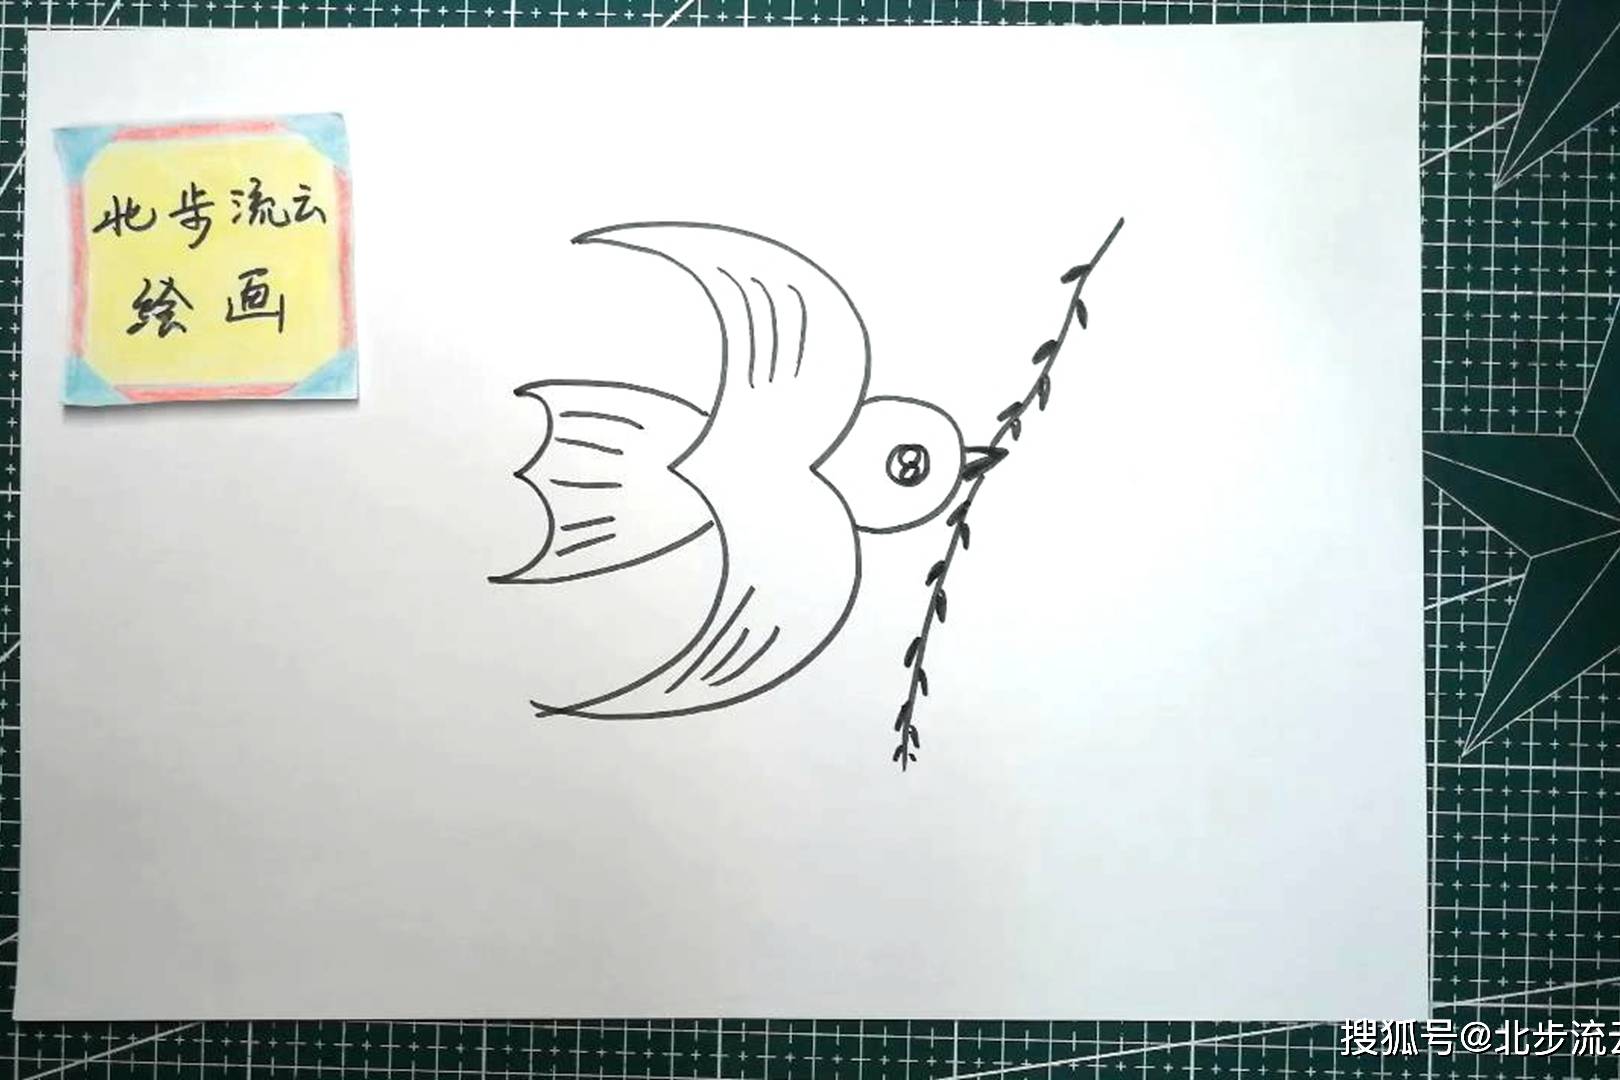 用三个3画一只可爱的燕子简笔画适合孩子画画